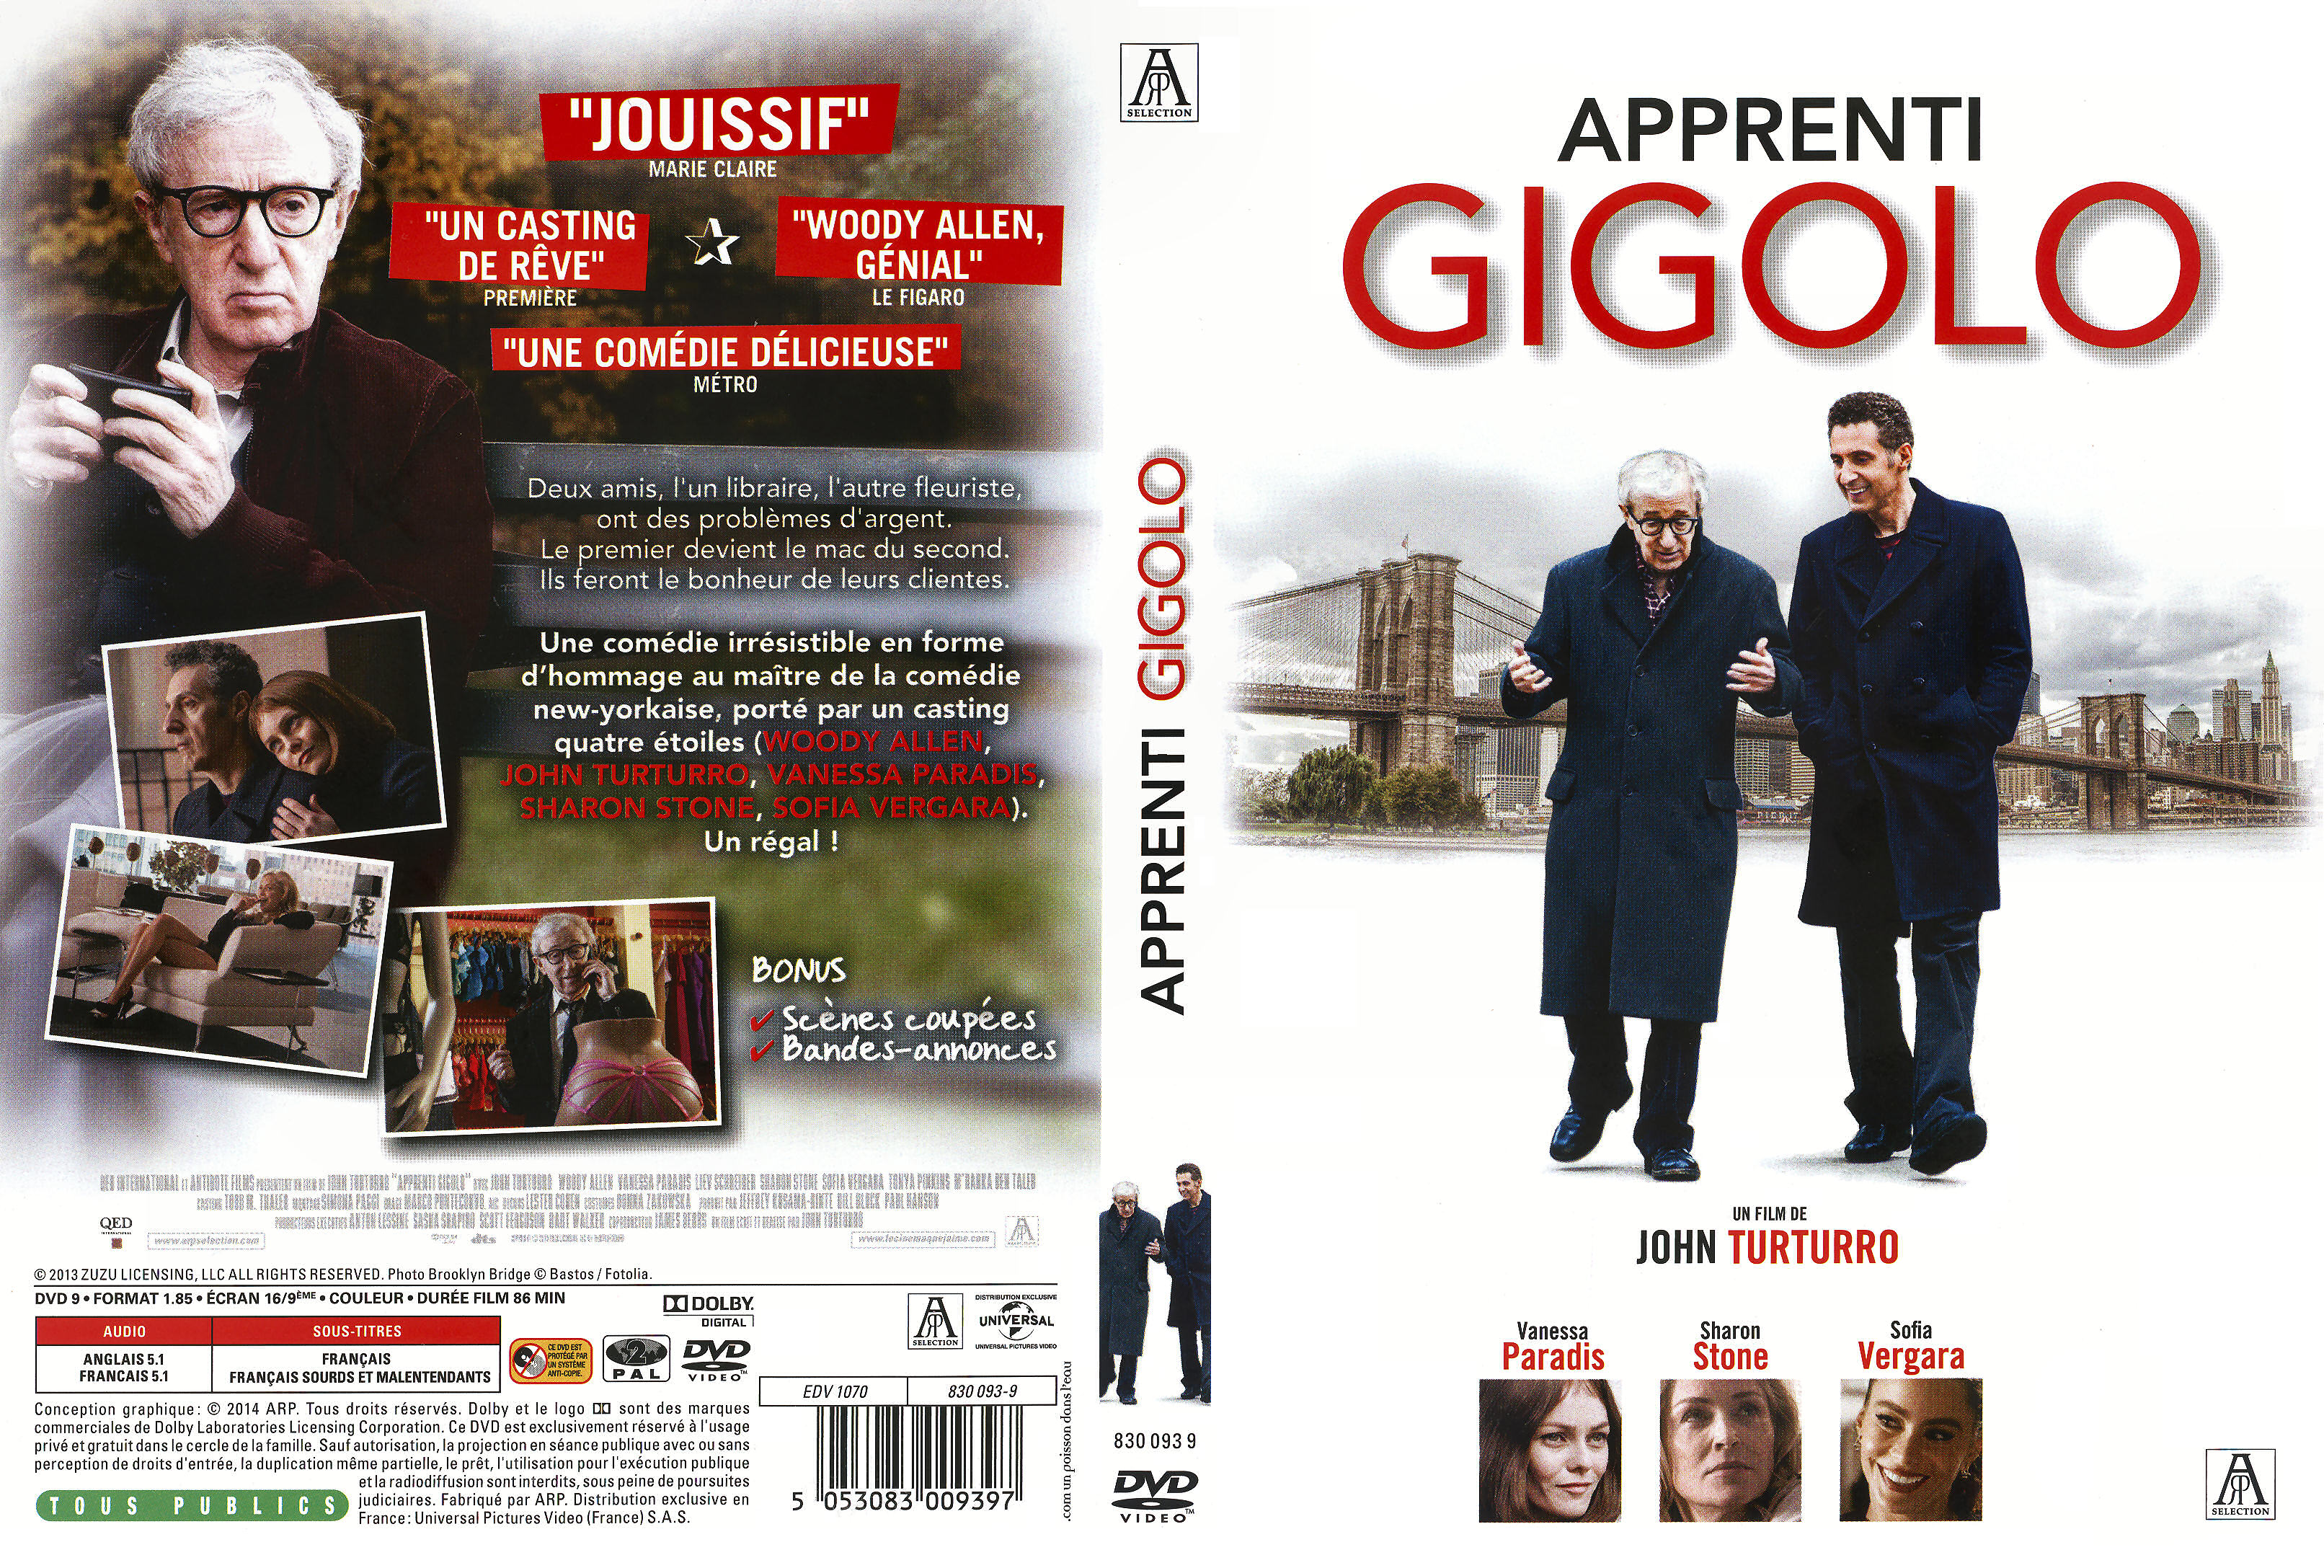 Jaquette DVD Apprenti Gigolo